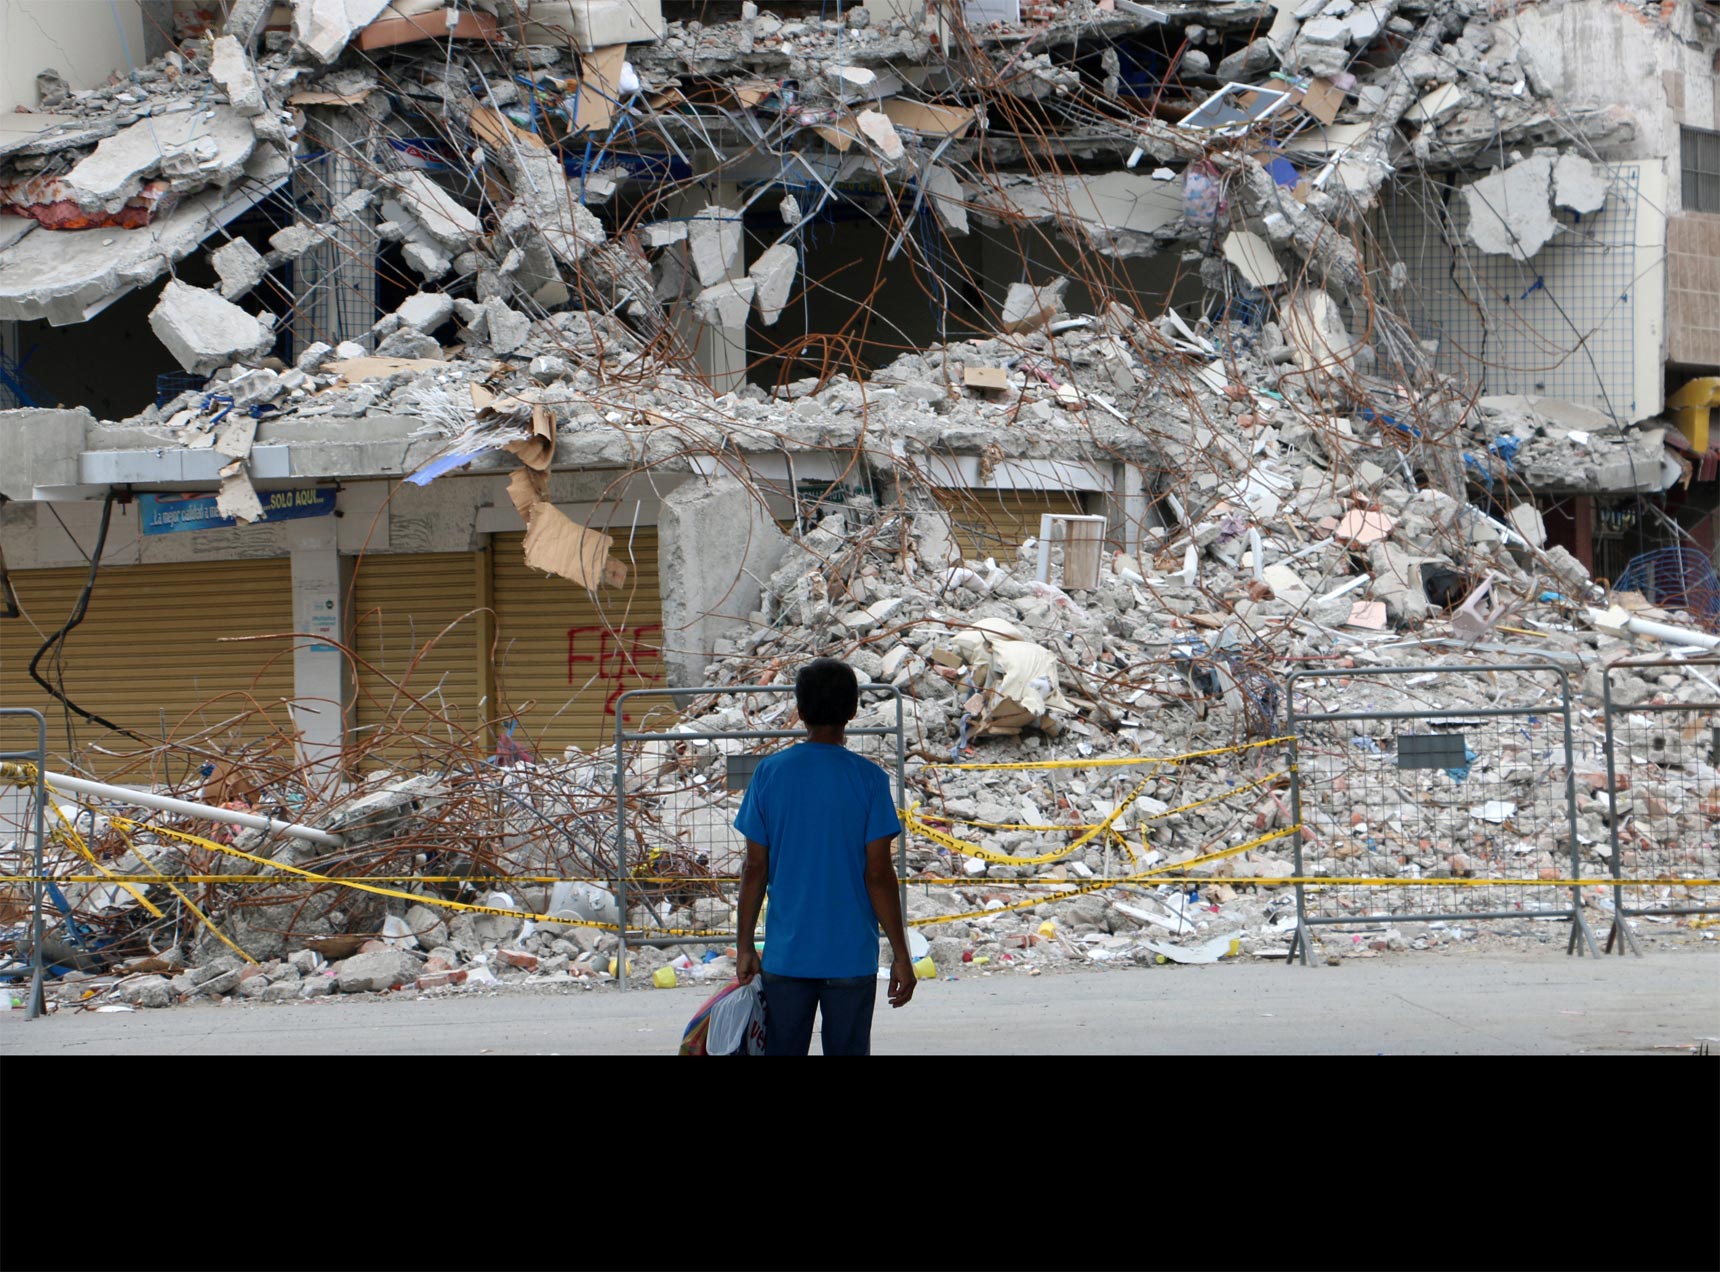 El Instituto de Geofísica indicó que luego del terremoto del 16 de abril se han producido más de mil movimientos sísmicos